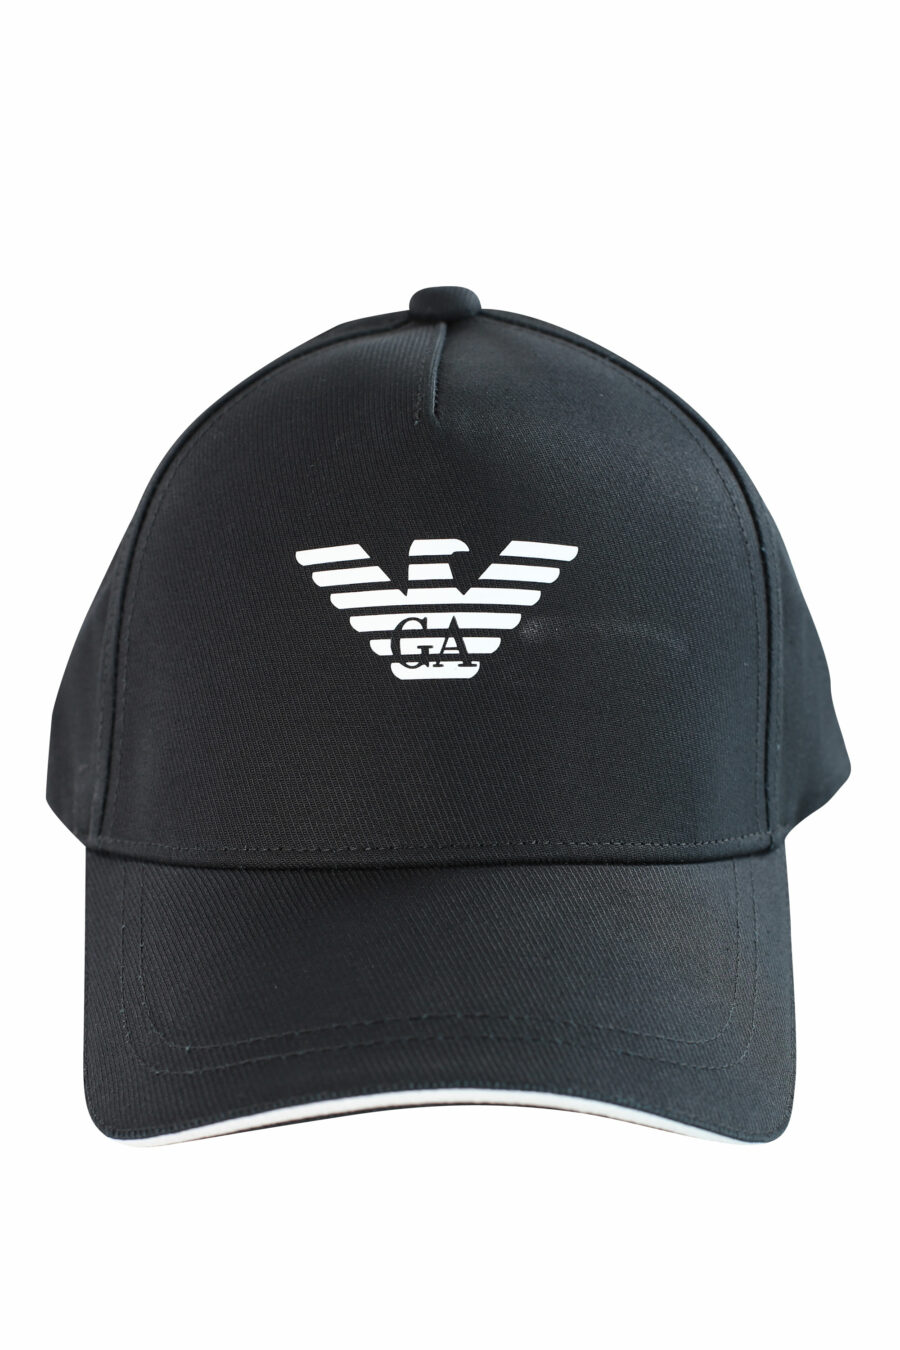 Gorra negra con logo águila blanco - IMG 3717